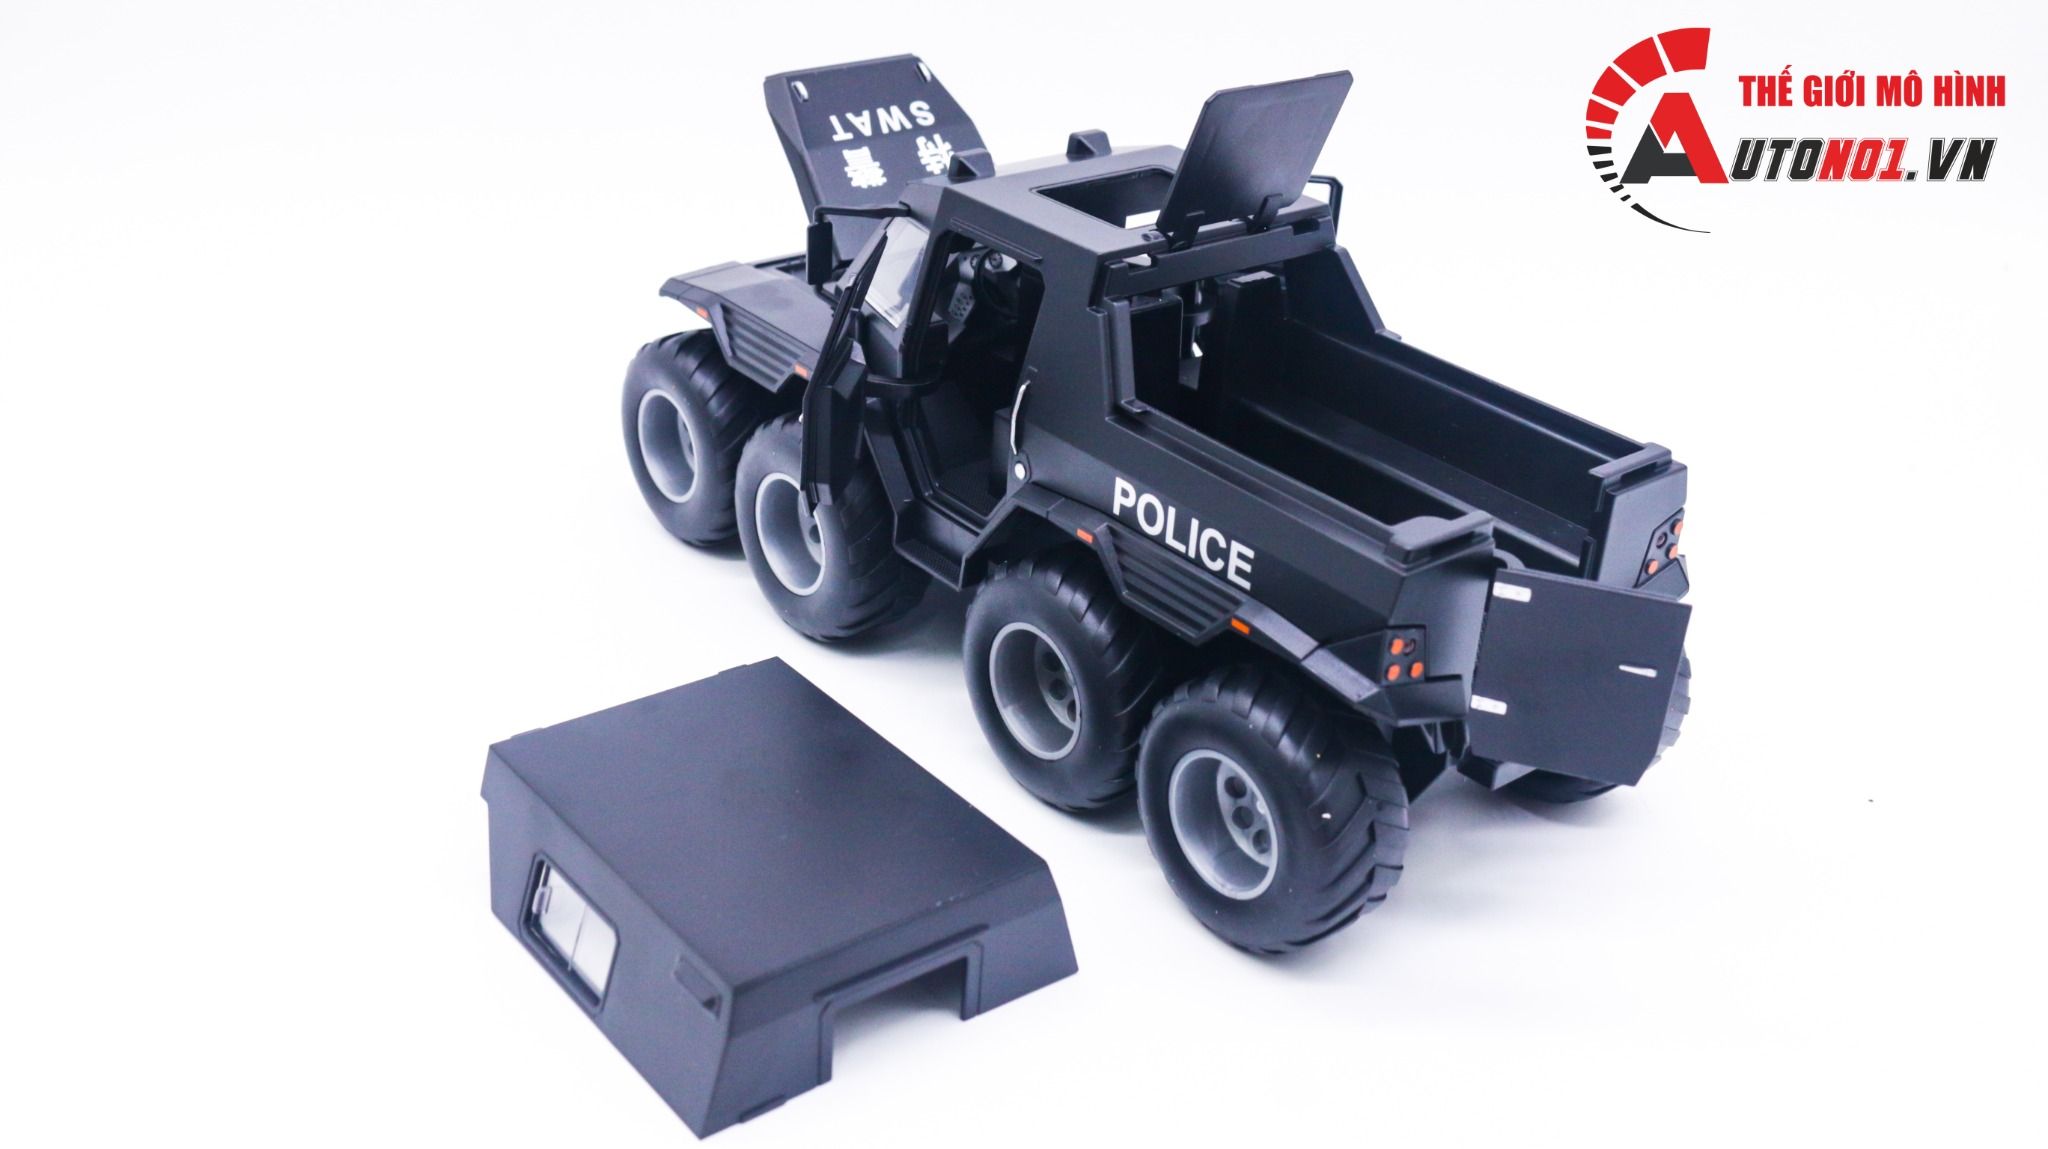  Mô hình xe cảnh sát địa hình lội nước Shaman 8x8 Police 1:24 Miniauto OT135 